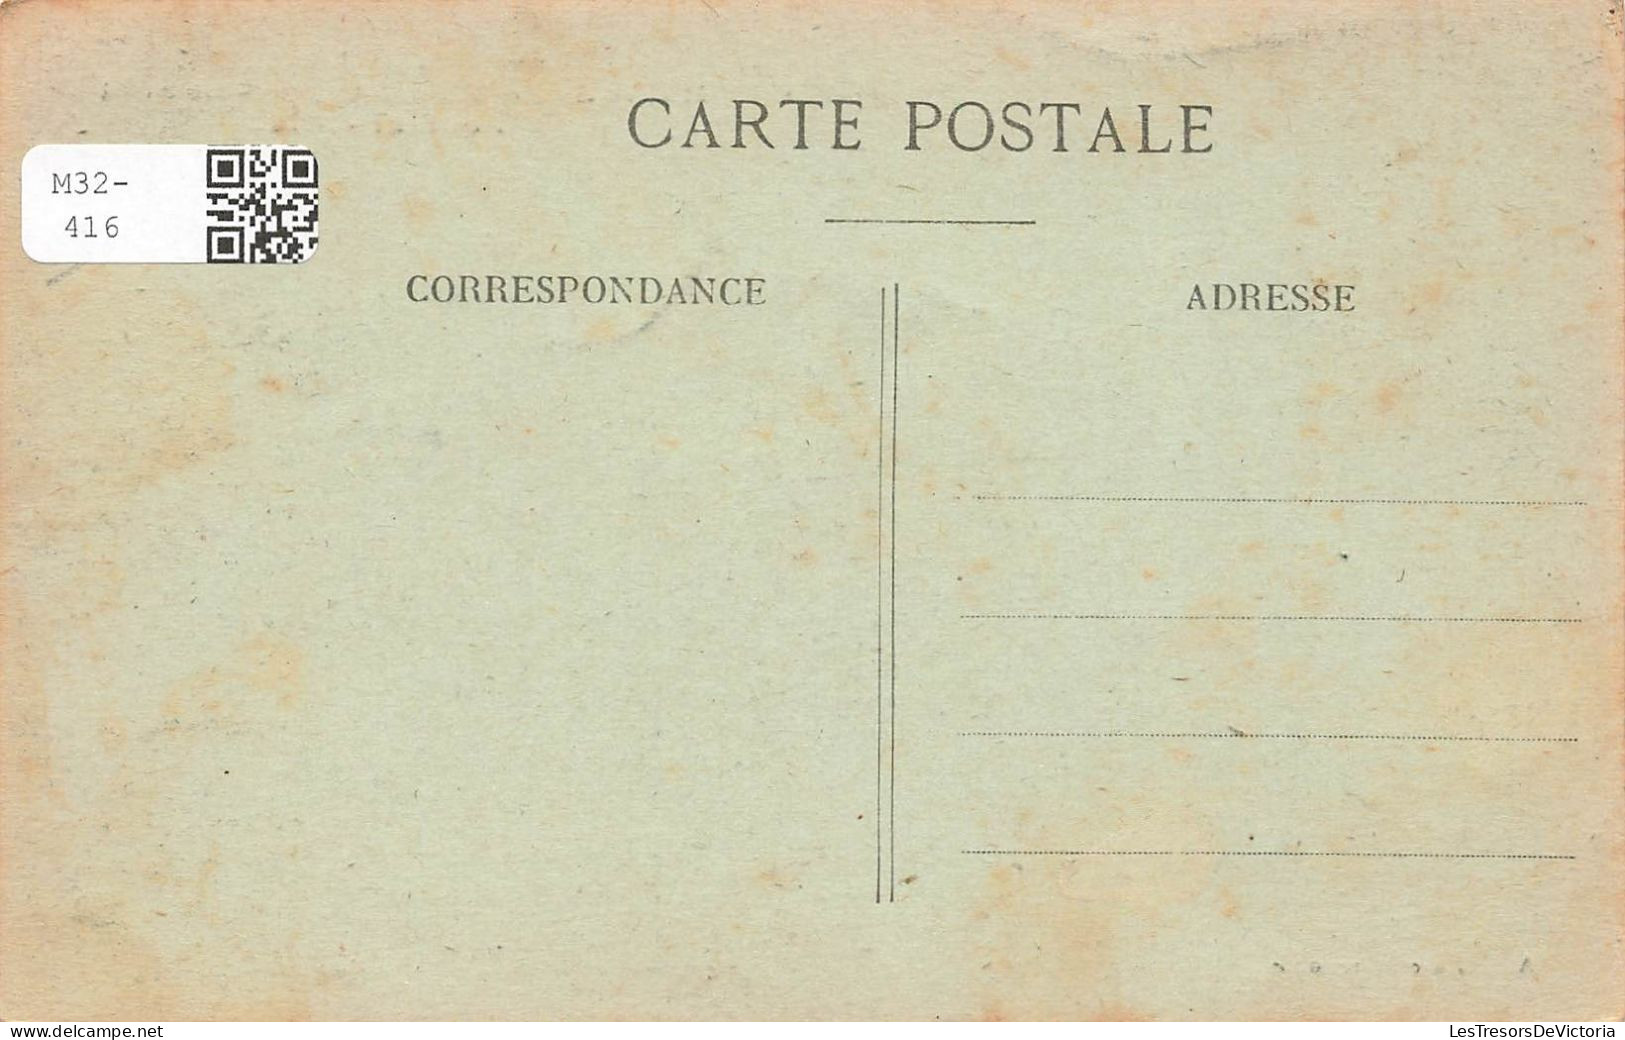 FRANCE - La Mure - Environs De La Mure - Route De La Mure à Corps - Le Pont De Pontant - A.M - Carte Postale Ancienne - La Mure